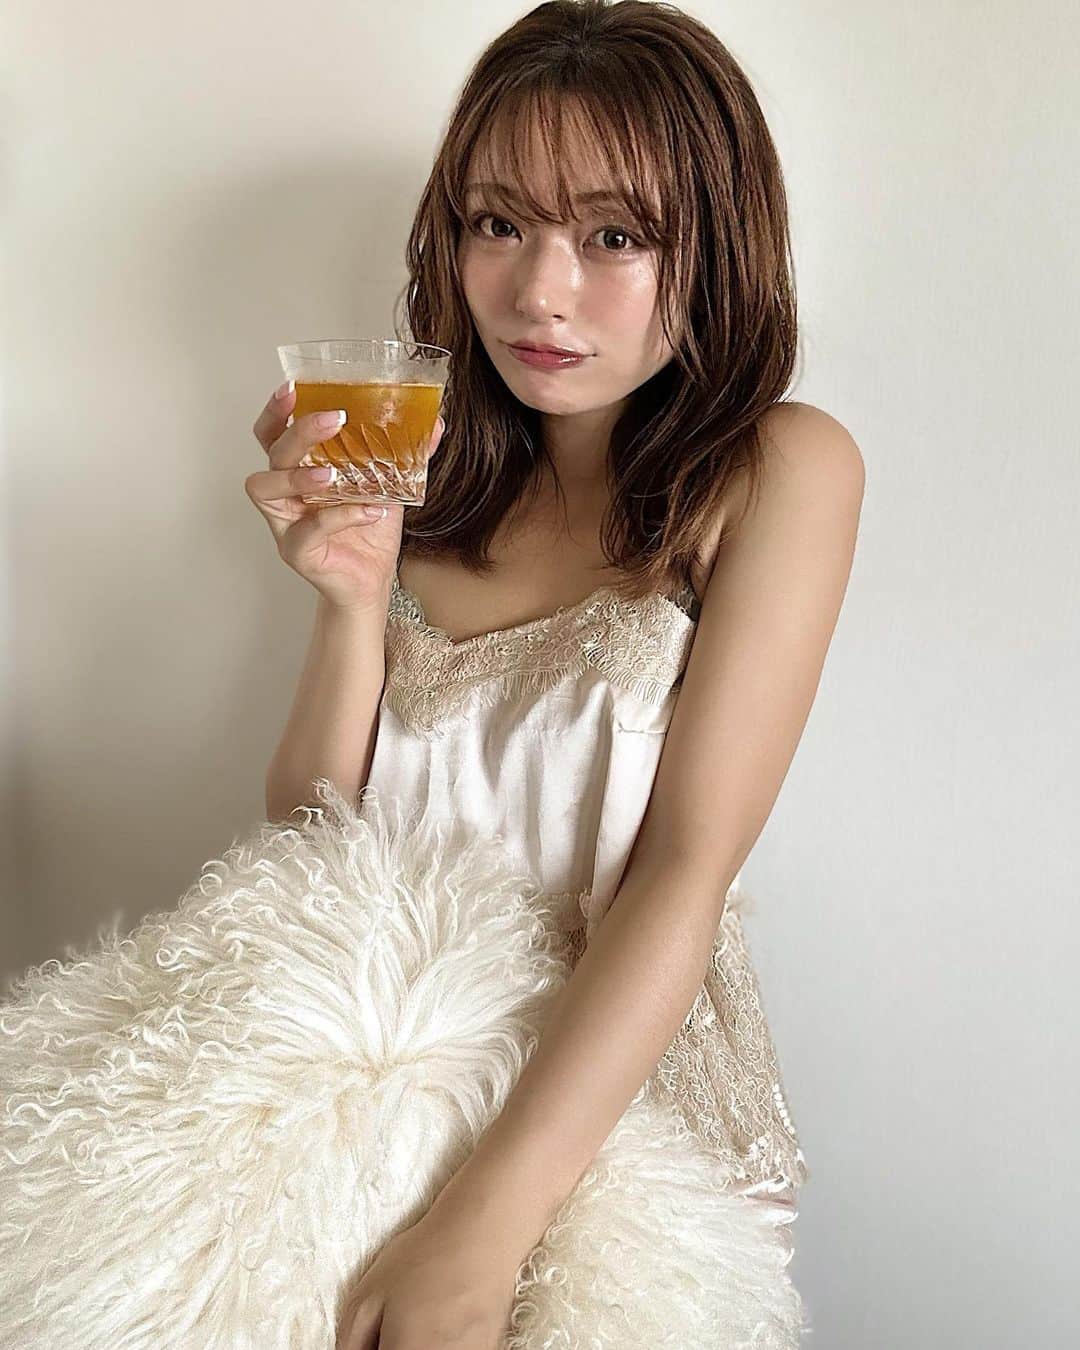 Yuuki mimuraのインスタグラム：「#PR 🥭🫧🍹  最近再びブームでお気に入りのコンブチャクレンズ🍹“ スタイルキープ・ダイエットなど 気を使ってる方は取り入れてるドリンク🥤  このコンブチャクレンズは 昆布のお茶じゃないよーっ🍵 酵素や食物繊維がたっぷり入ってるのに、 マンゴー味で美味しいジュースみたいな感覚で飲めるよ🥭“ こういうドリンクって酸っぱいイメージだけど 全然そんなことなくてゴクゴクいけちゃう❣️  わたしは朝食代わりに炭酸で割って飲むのが大好き🫧 ヨーグルトとかにかけて食べるって子もいたよ🥣  気持ちに余裕がある時は 夜ご飯を置き換えたりしてるんだけど 朝すごく体が軽くてスッキリする🌞“  　@earlysunrise_   #コンブチャクレンズ  #アーリーサンライズ　 #kombuchacleanse  #earlysunrise」